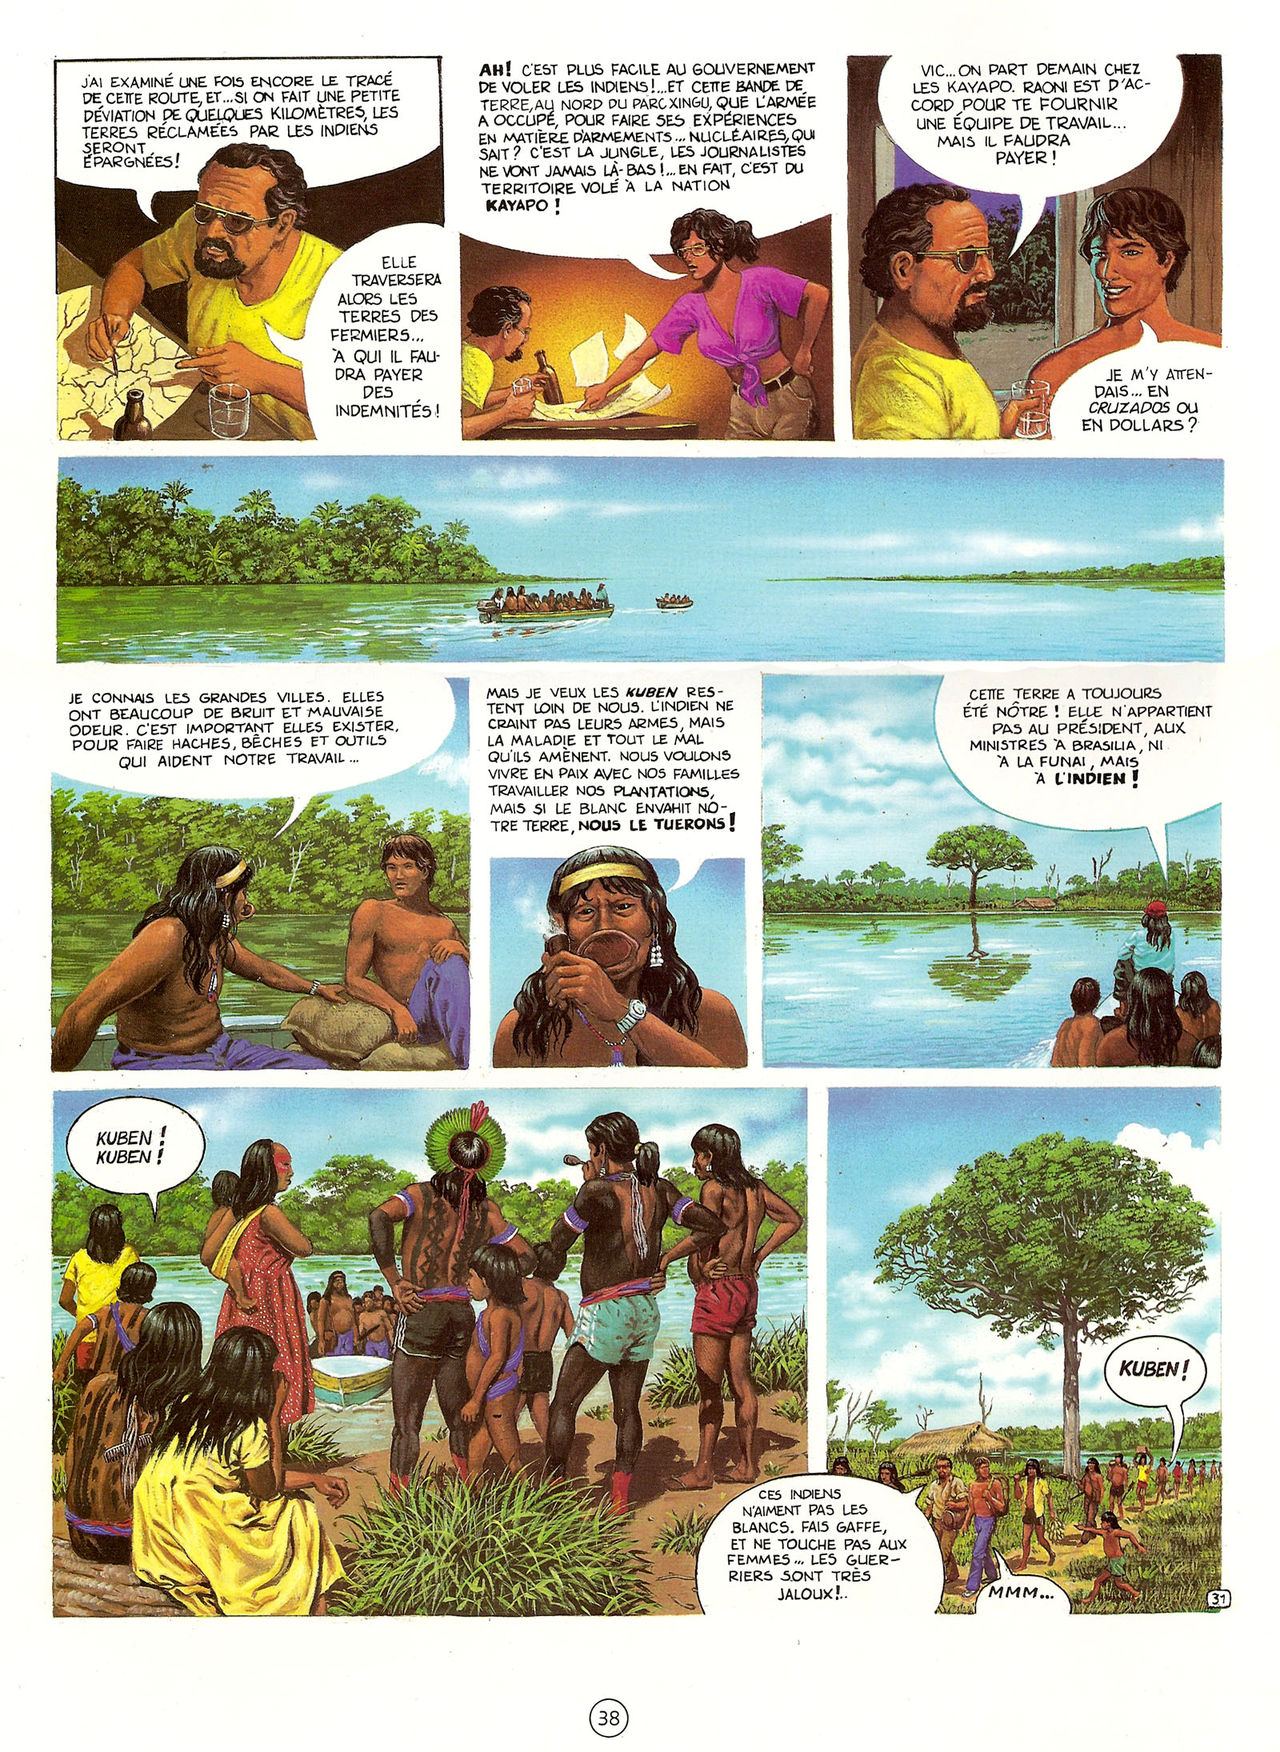 Les Aventures de Vic Voyage 05 - Brazil! numero d'image 38